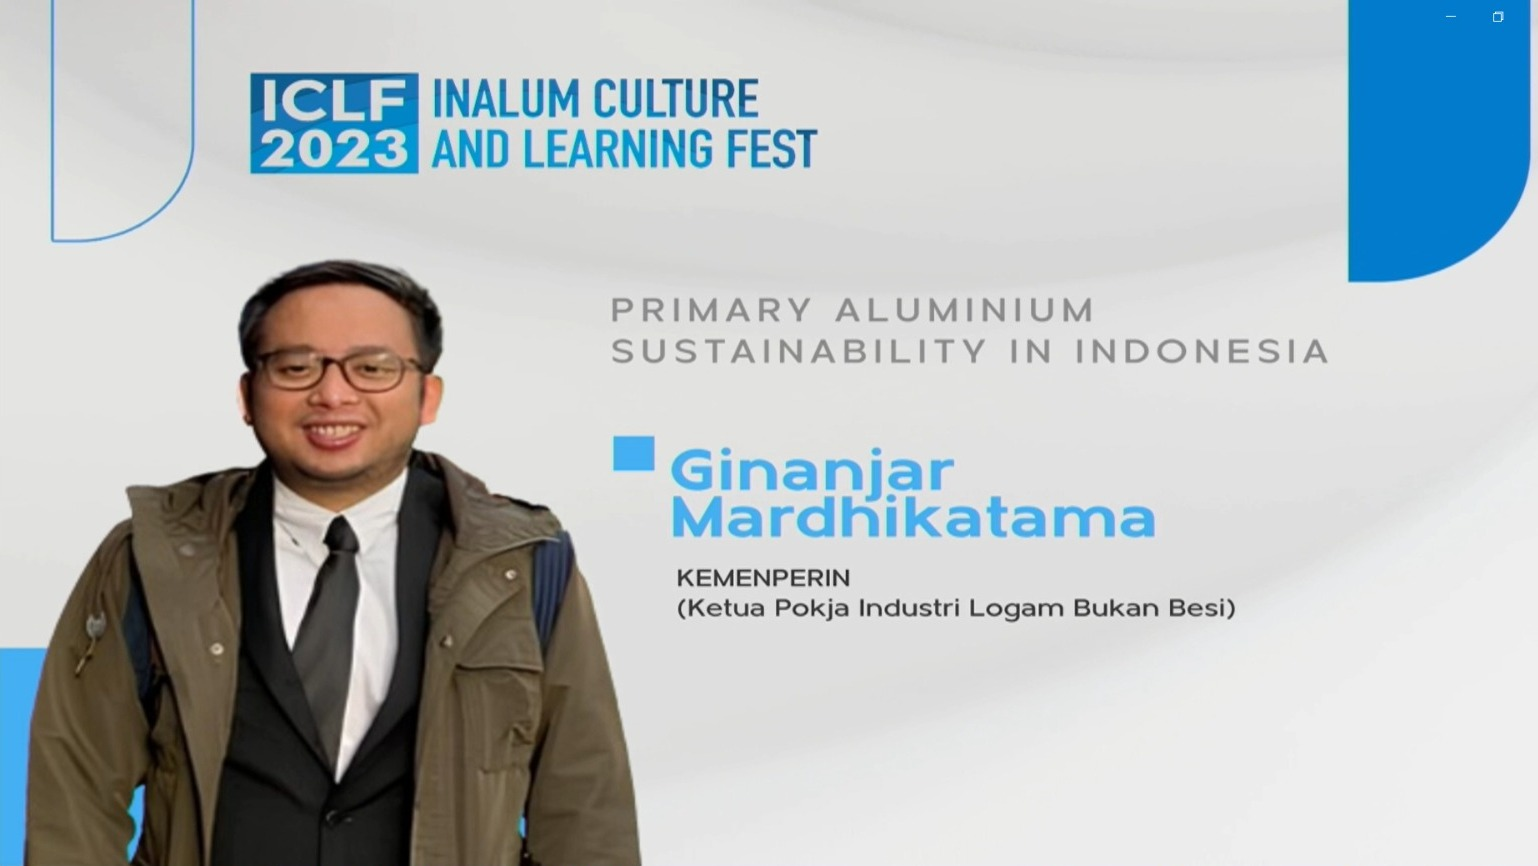 ICLF 2023 - Primary Aluminium Sustainability in Indonesia